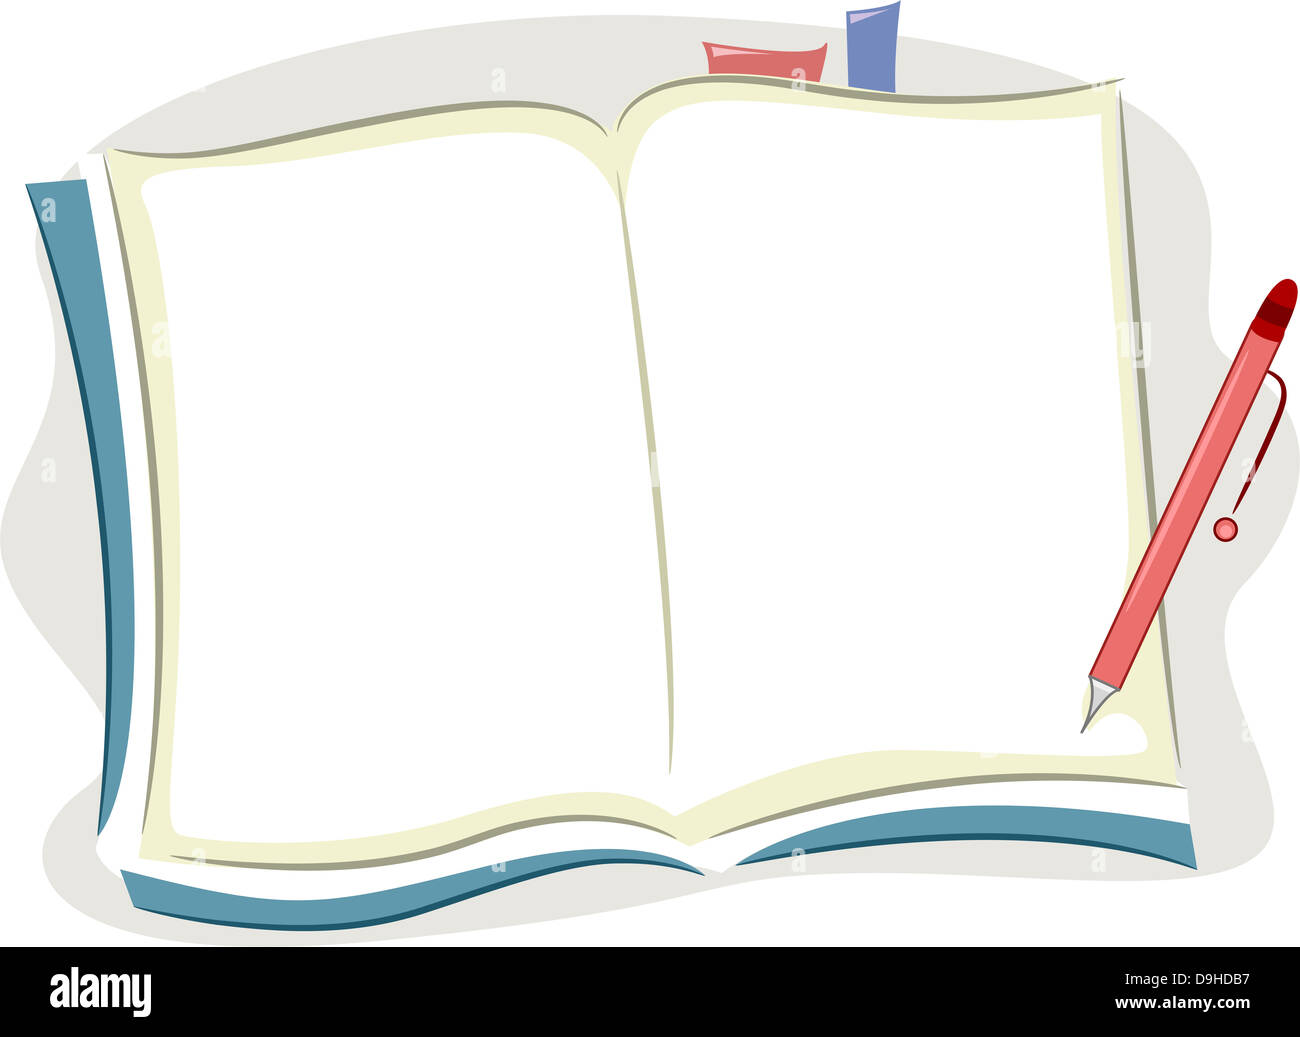 https://c8.alamy.com/compes/d9hdb7/ilustracion-de-fondo-de-un-cuaderno-abierto-en-blanco-con-marcadores-y-un-lapiz-d9hdb7.jpg